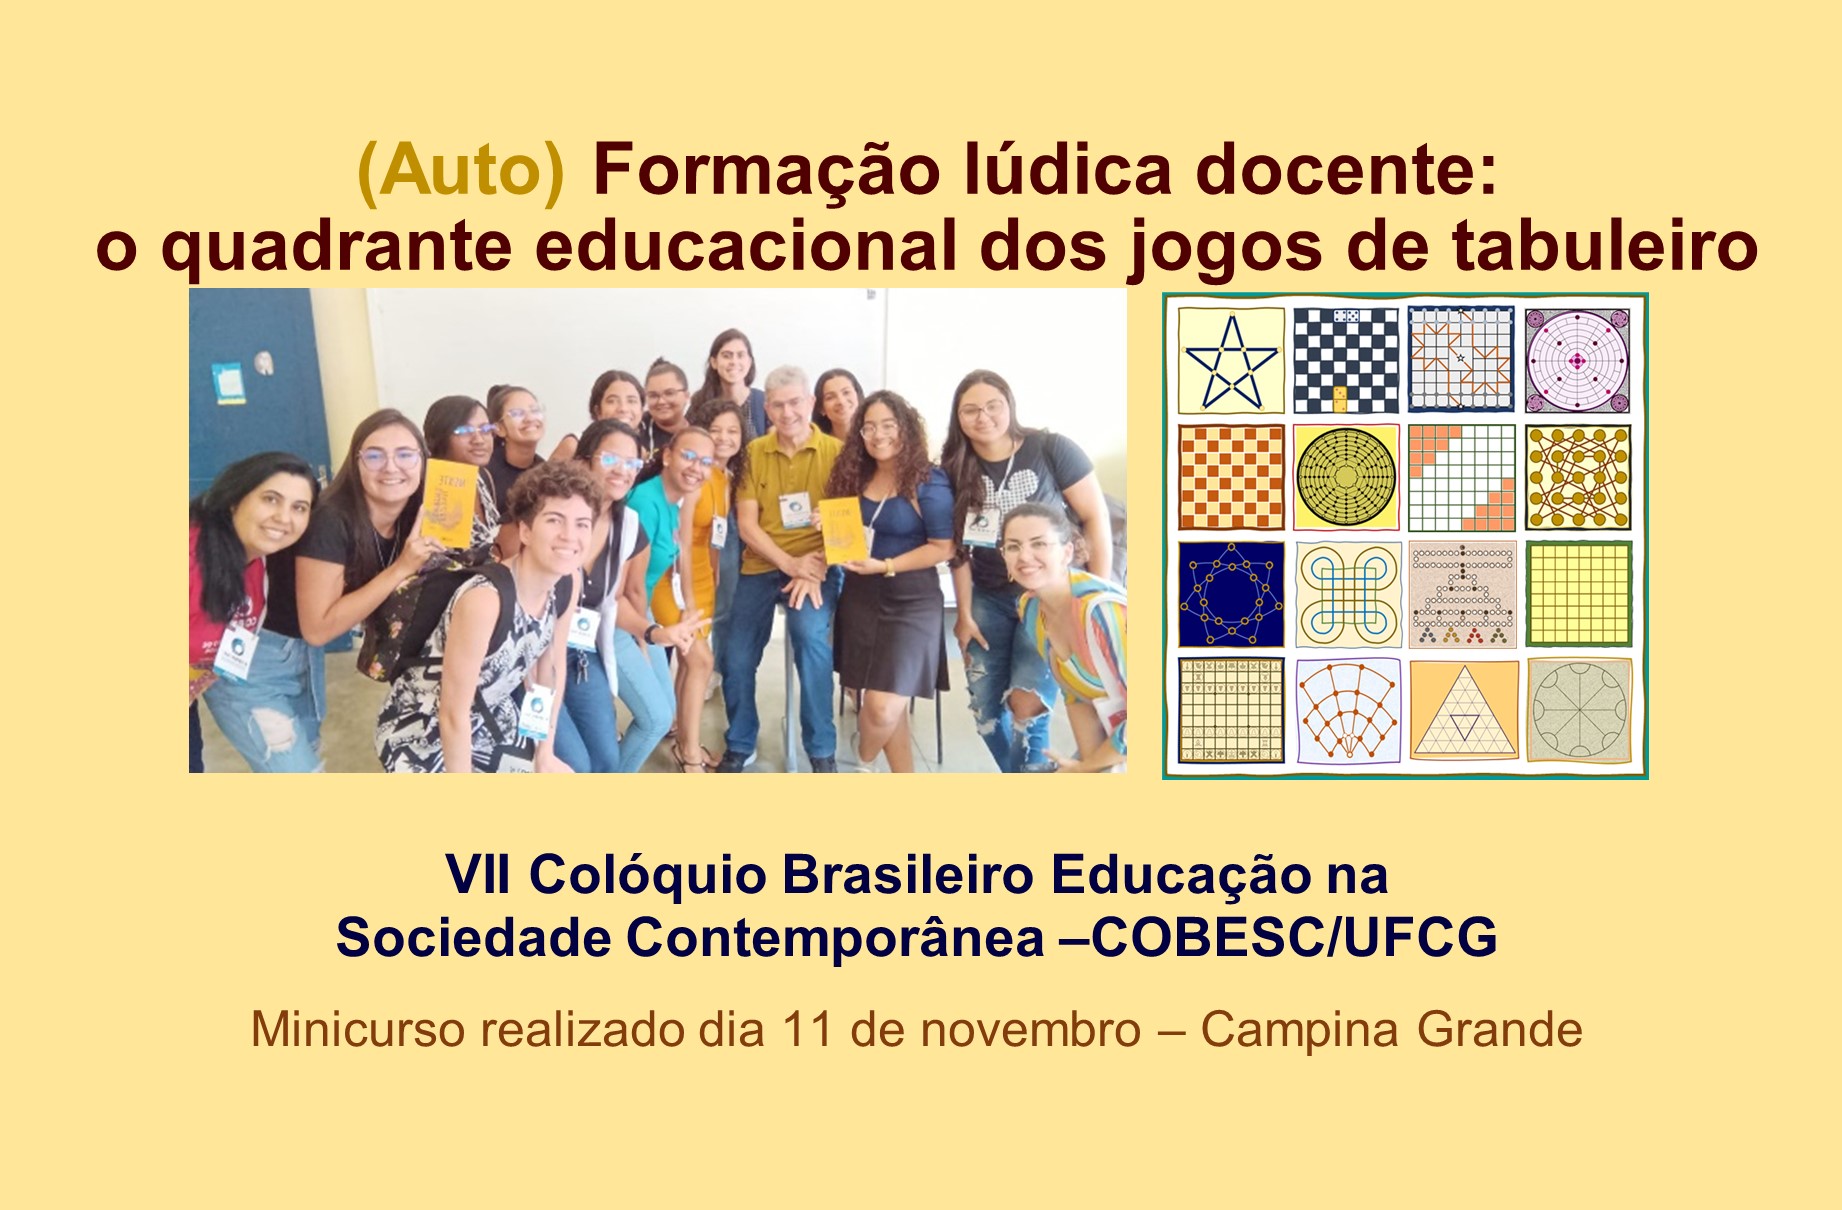 Minicurso sobre autoformação lúdica docente ministrado no COBESC/UFCG